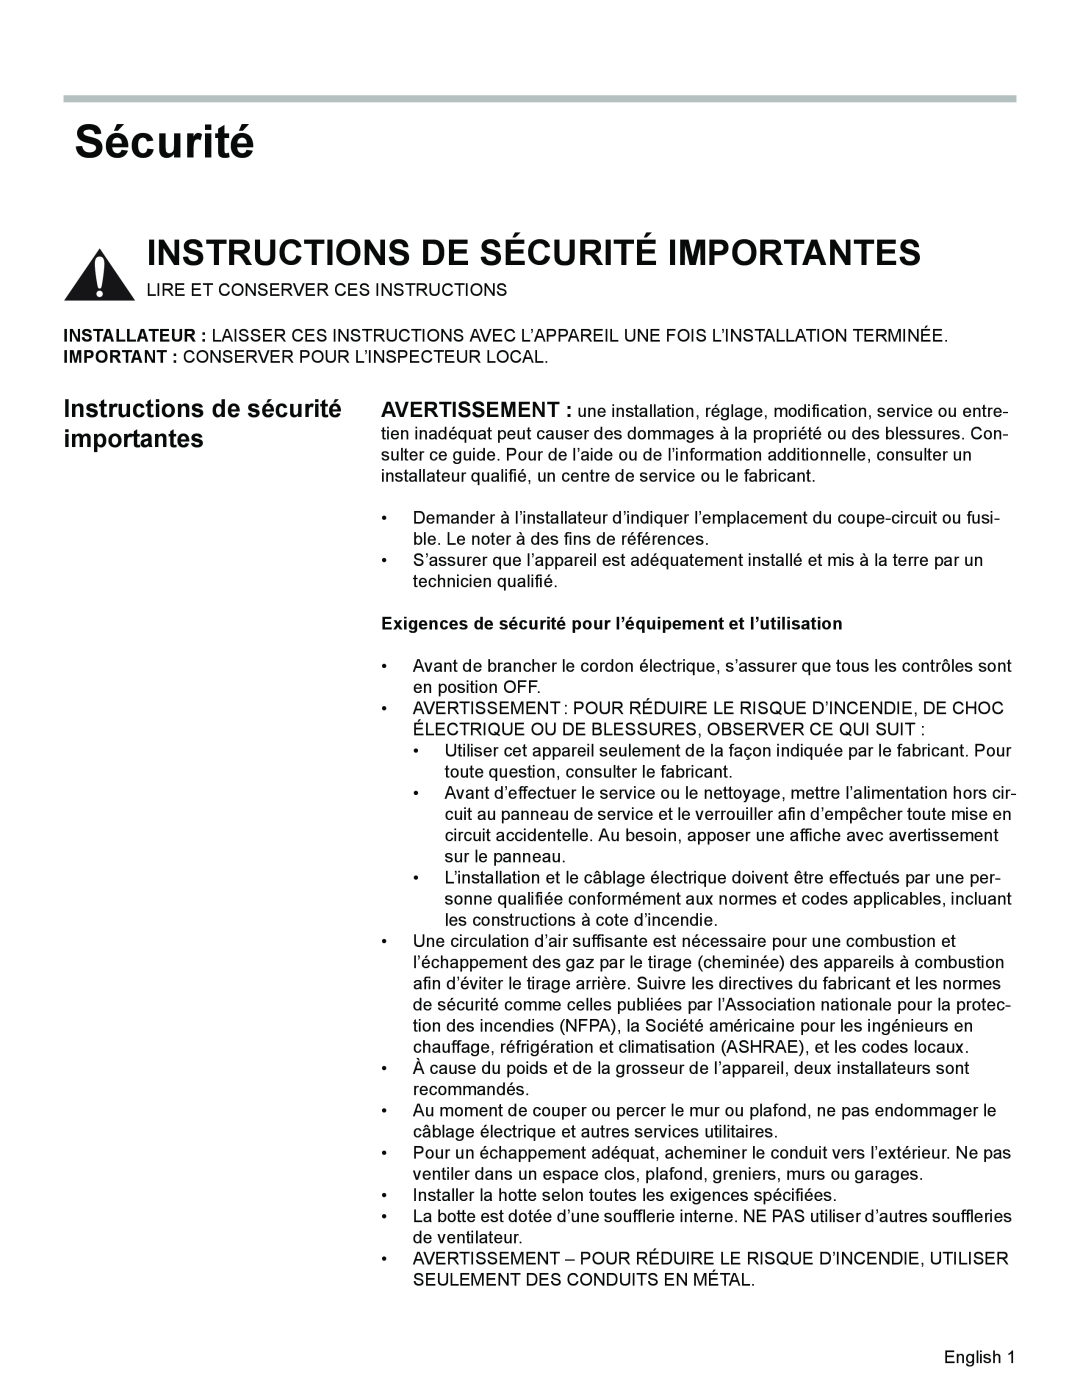 Bosch Appliances DKE94 installation manual Instructions De Sécurité Importantes, Instructions de sécurité importantes 